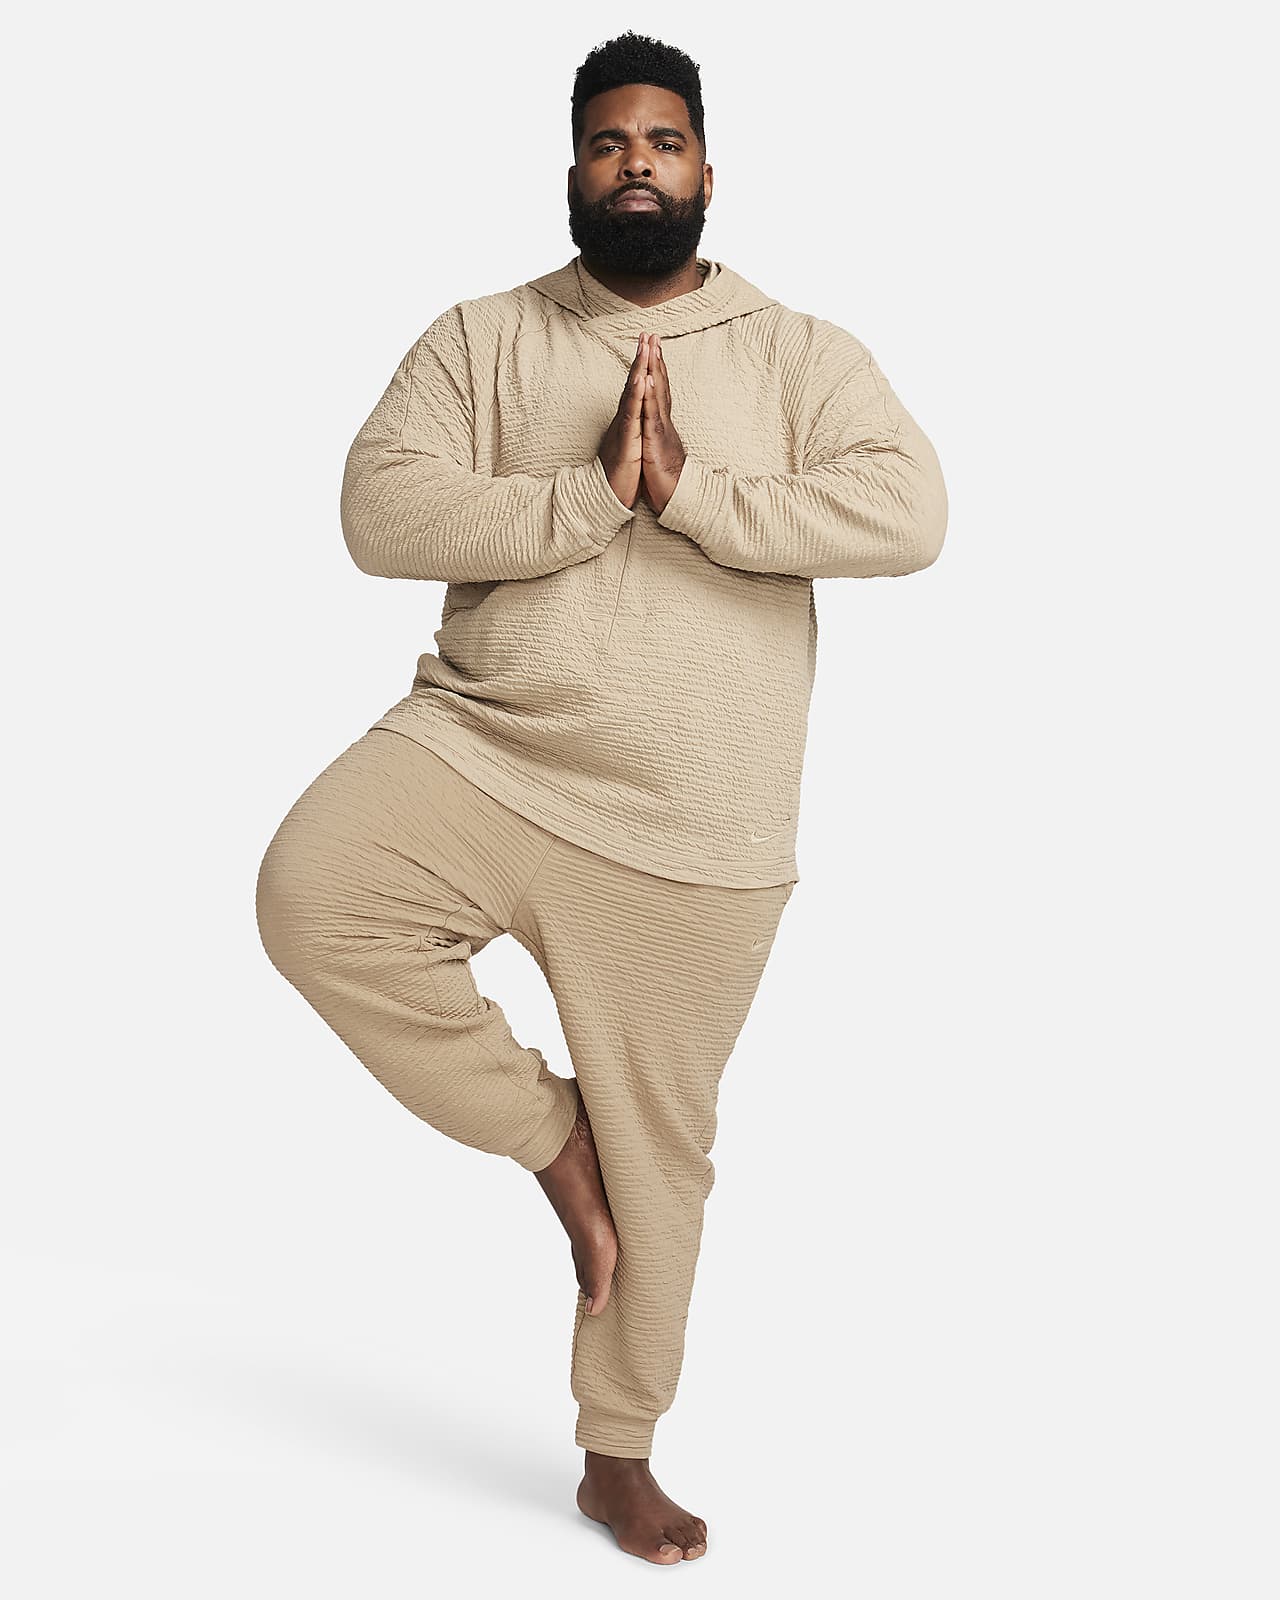 Nike Yoga Men's Dri-FIT Pants.